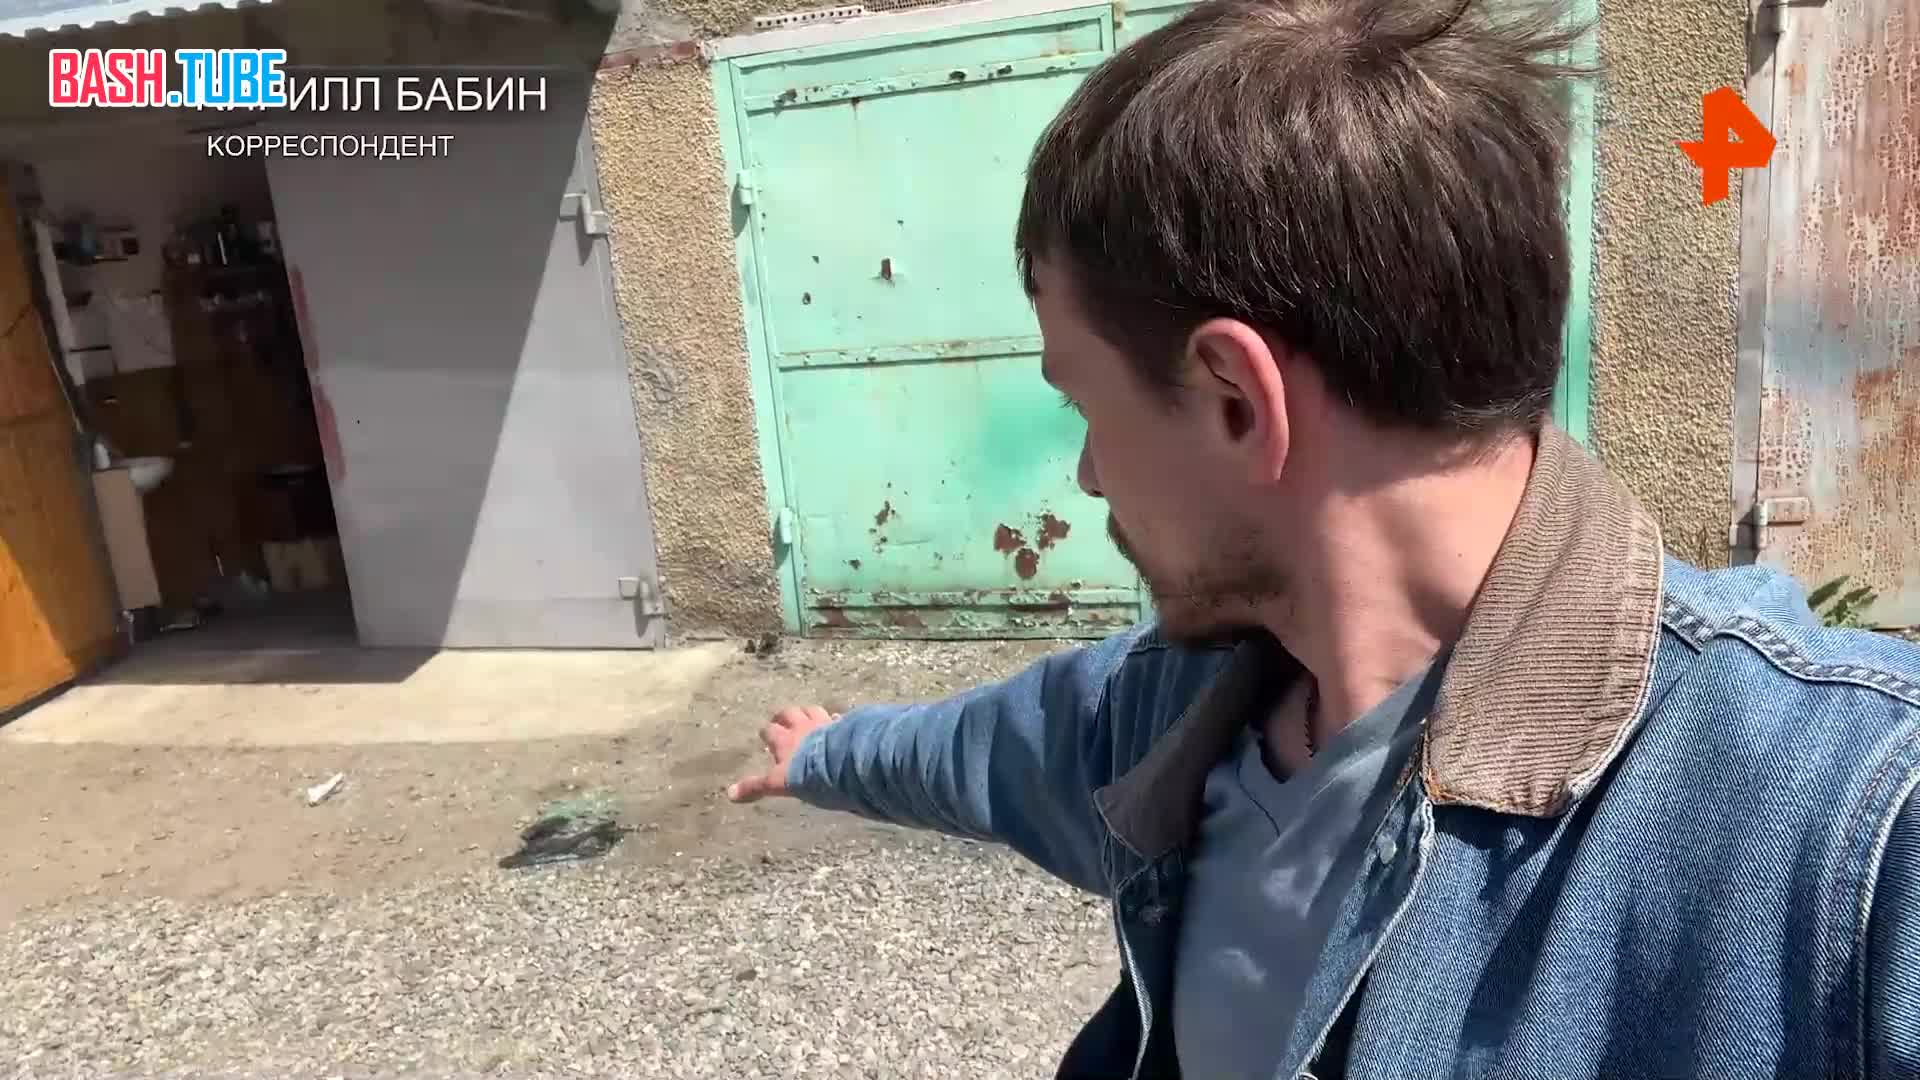  Корреспондент РЕН ТВ Кирилл Бабин показал место убийства полицейских в Карачаево-Черкесии